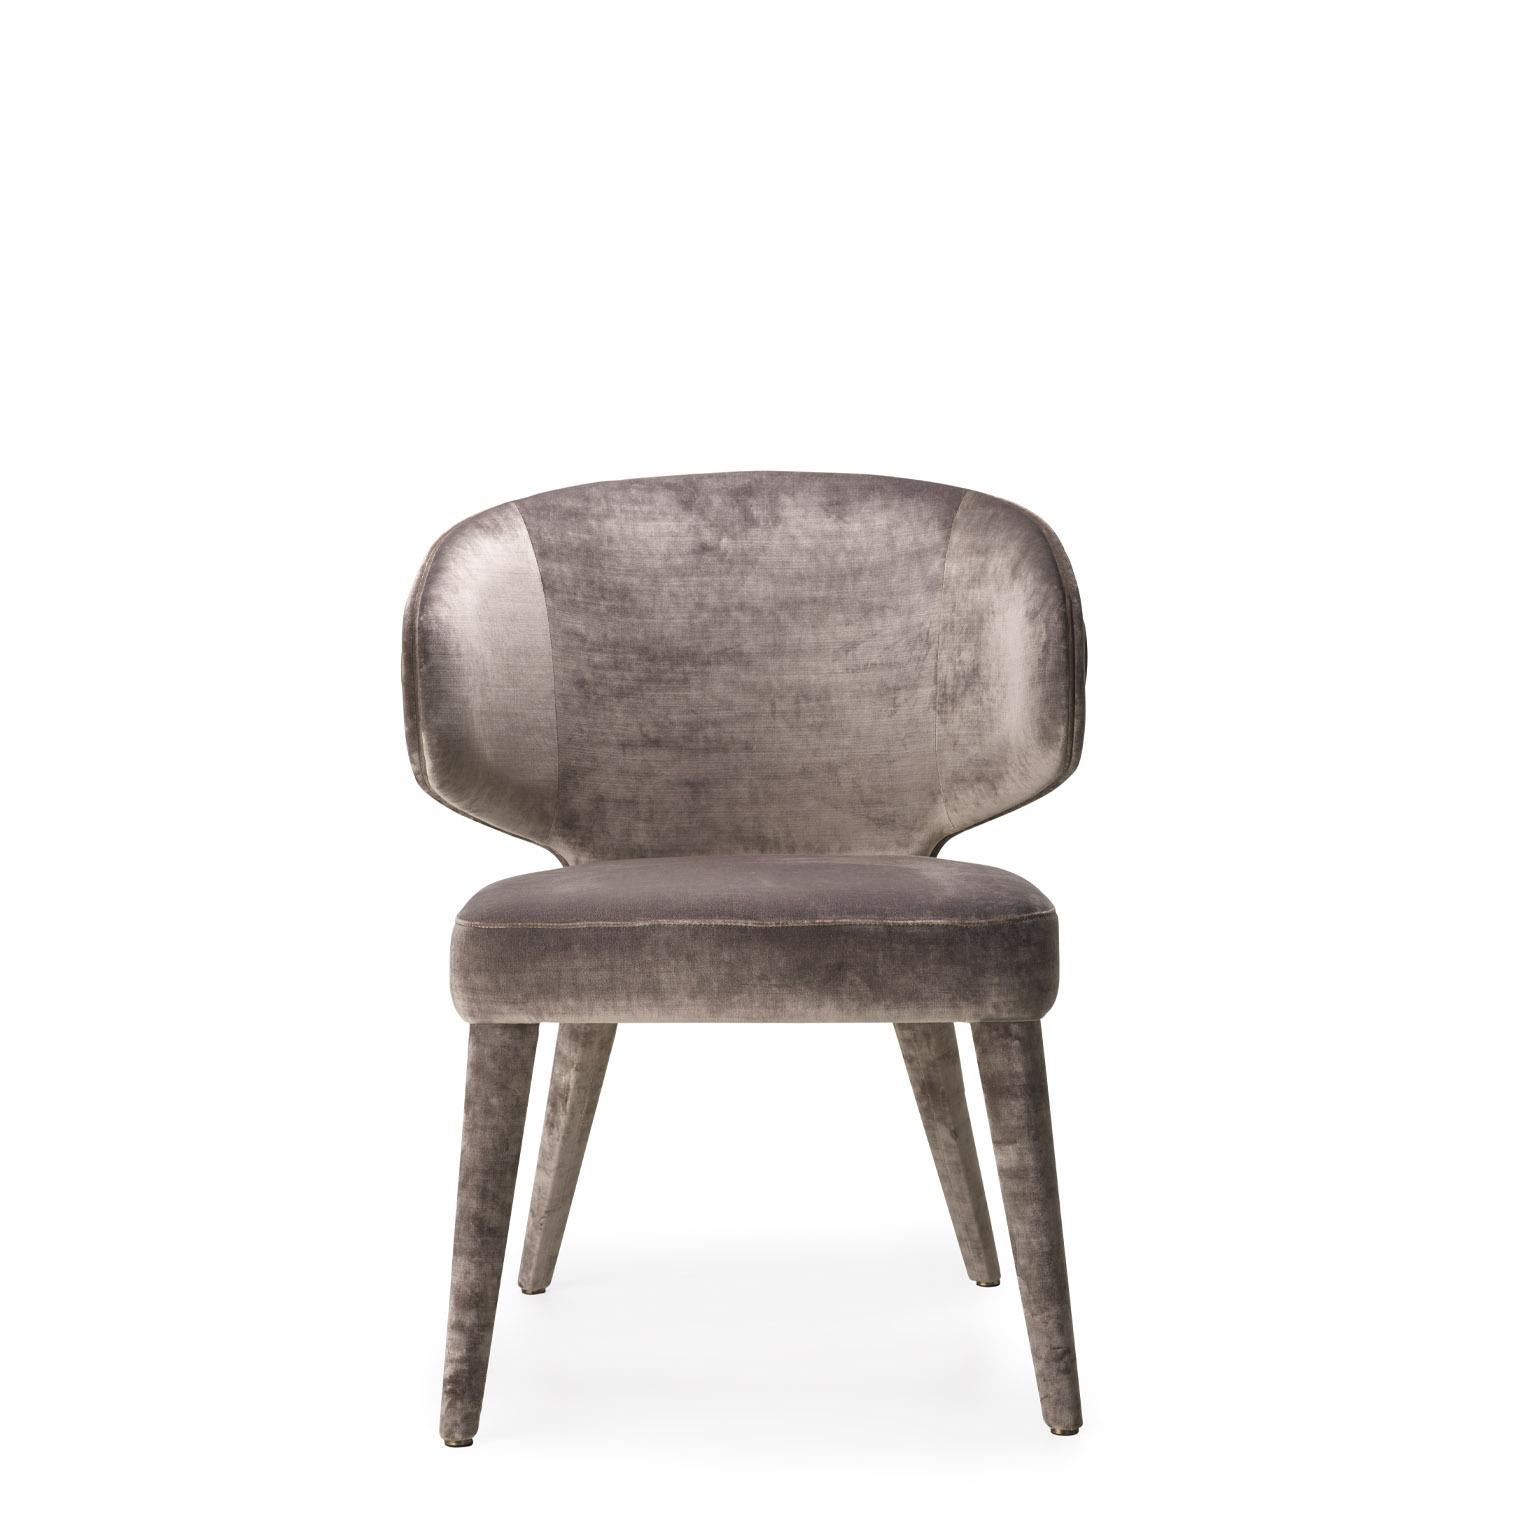 Unser Stuhl Circe ist Ausdruck meisterlicher Handwerkskunst und eine einzigartige Mischung aus hochwertigen MATERIALEN und durchdachten Details. Circe zeichnet sich durch weiche Volumina aus und verfügt über eine umhüllende Rückenlehne, die